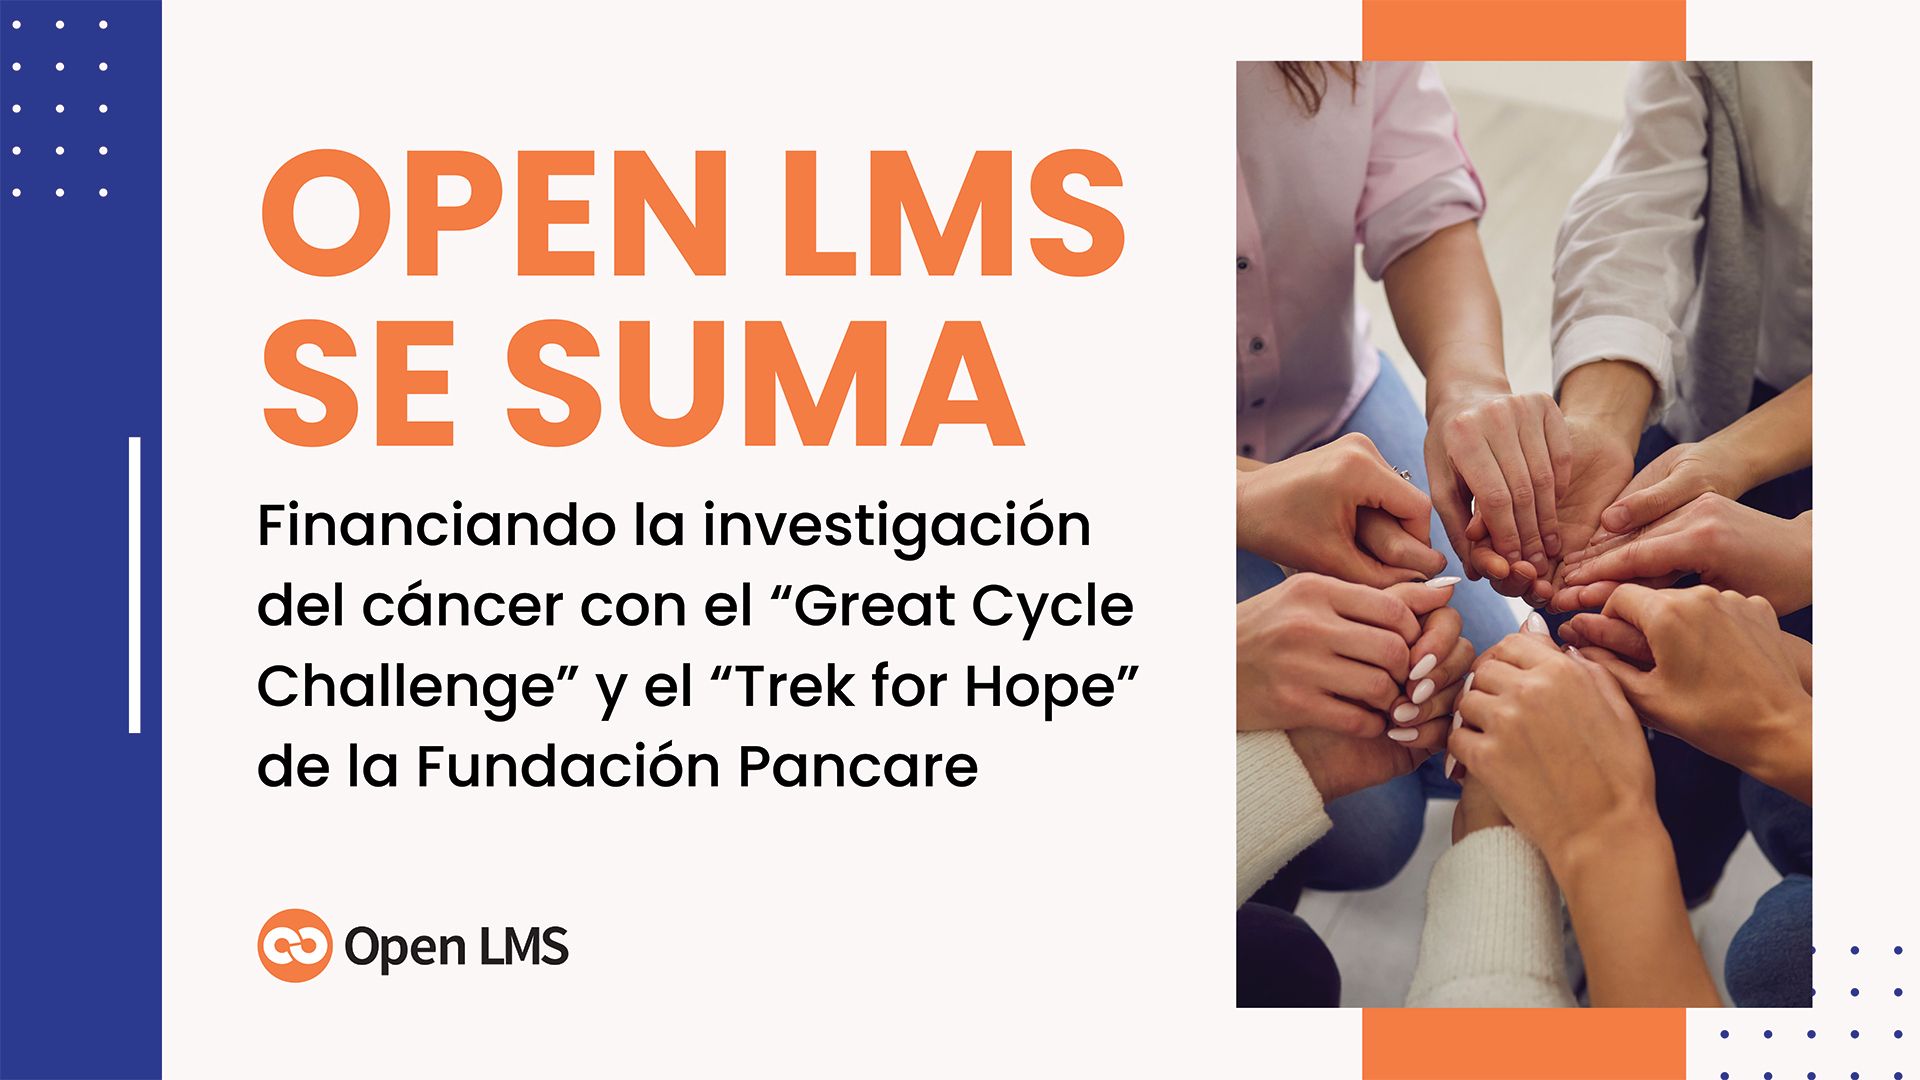 Open LMS se suma: Financiando la investigación del cáncer con el “Great Cycle Challenge” y el “Trek for Hope” de la Fundación Pancare